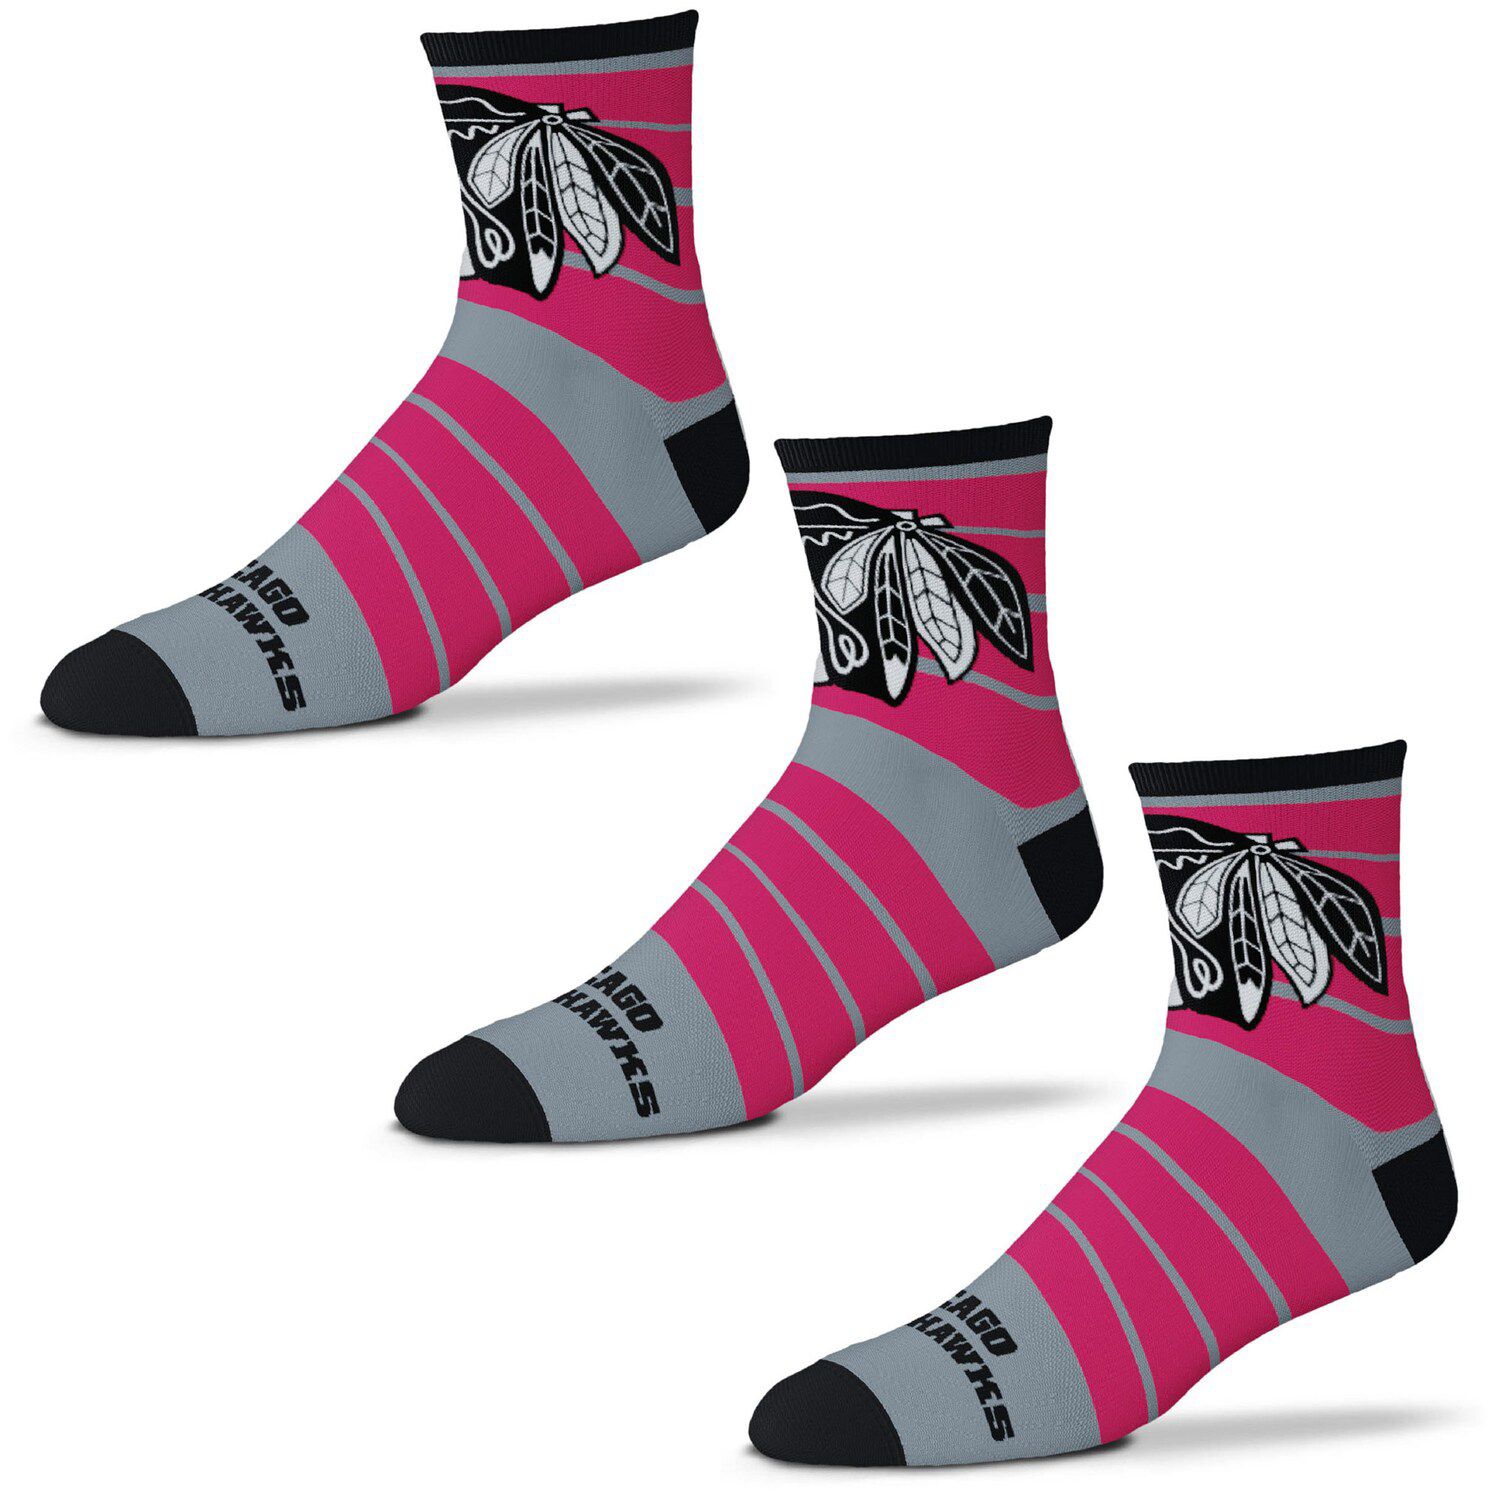 Image for Unbranded Men's For Bare Feet Chicago Blackhawks Three-Pack Quad Socks at Kohl's.